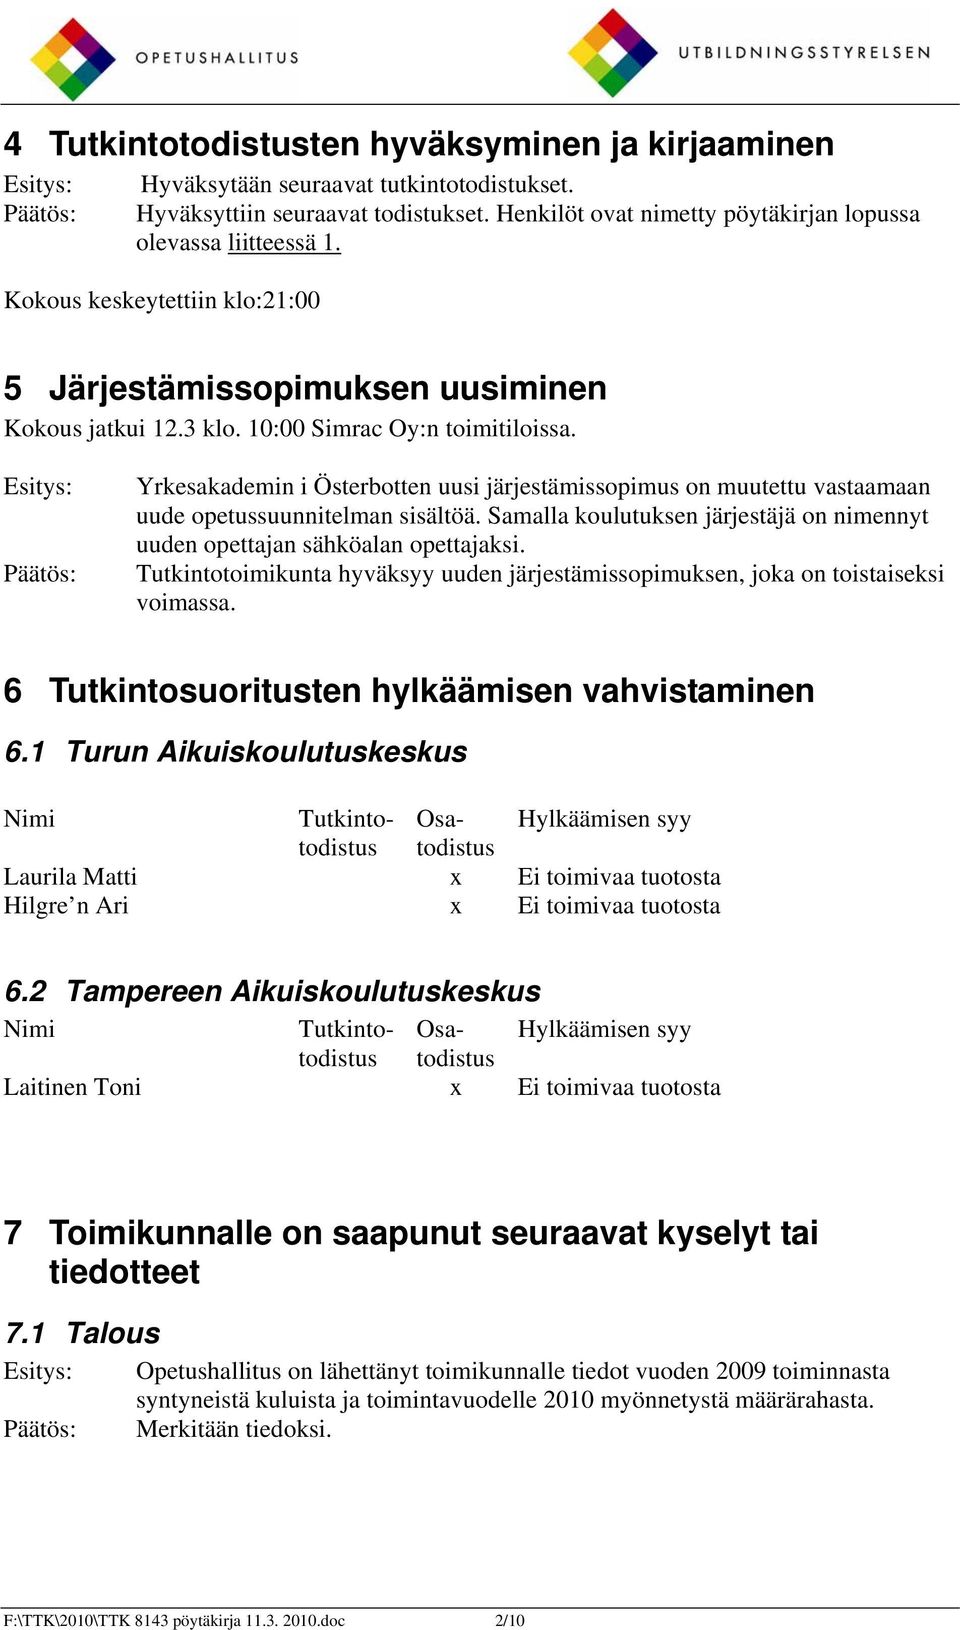 Esitys: Päätös: Yrkesakademin i Österbotten uusi järjestämissopimus on muutettu vastaamaan uude opetussuunnitelman sisältöä.